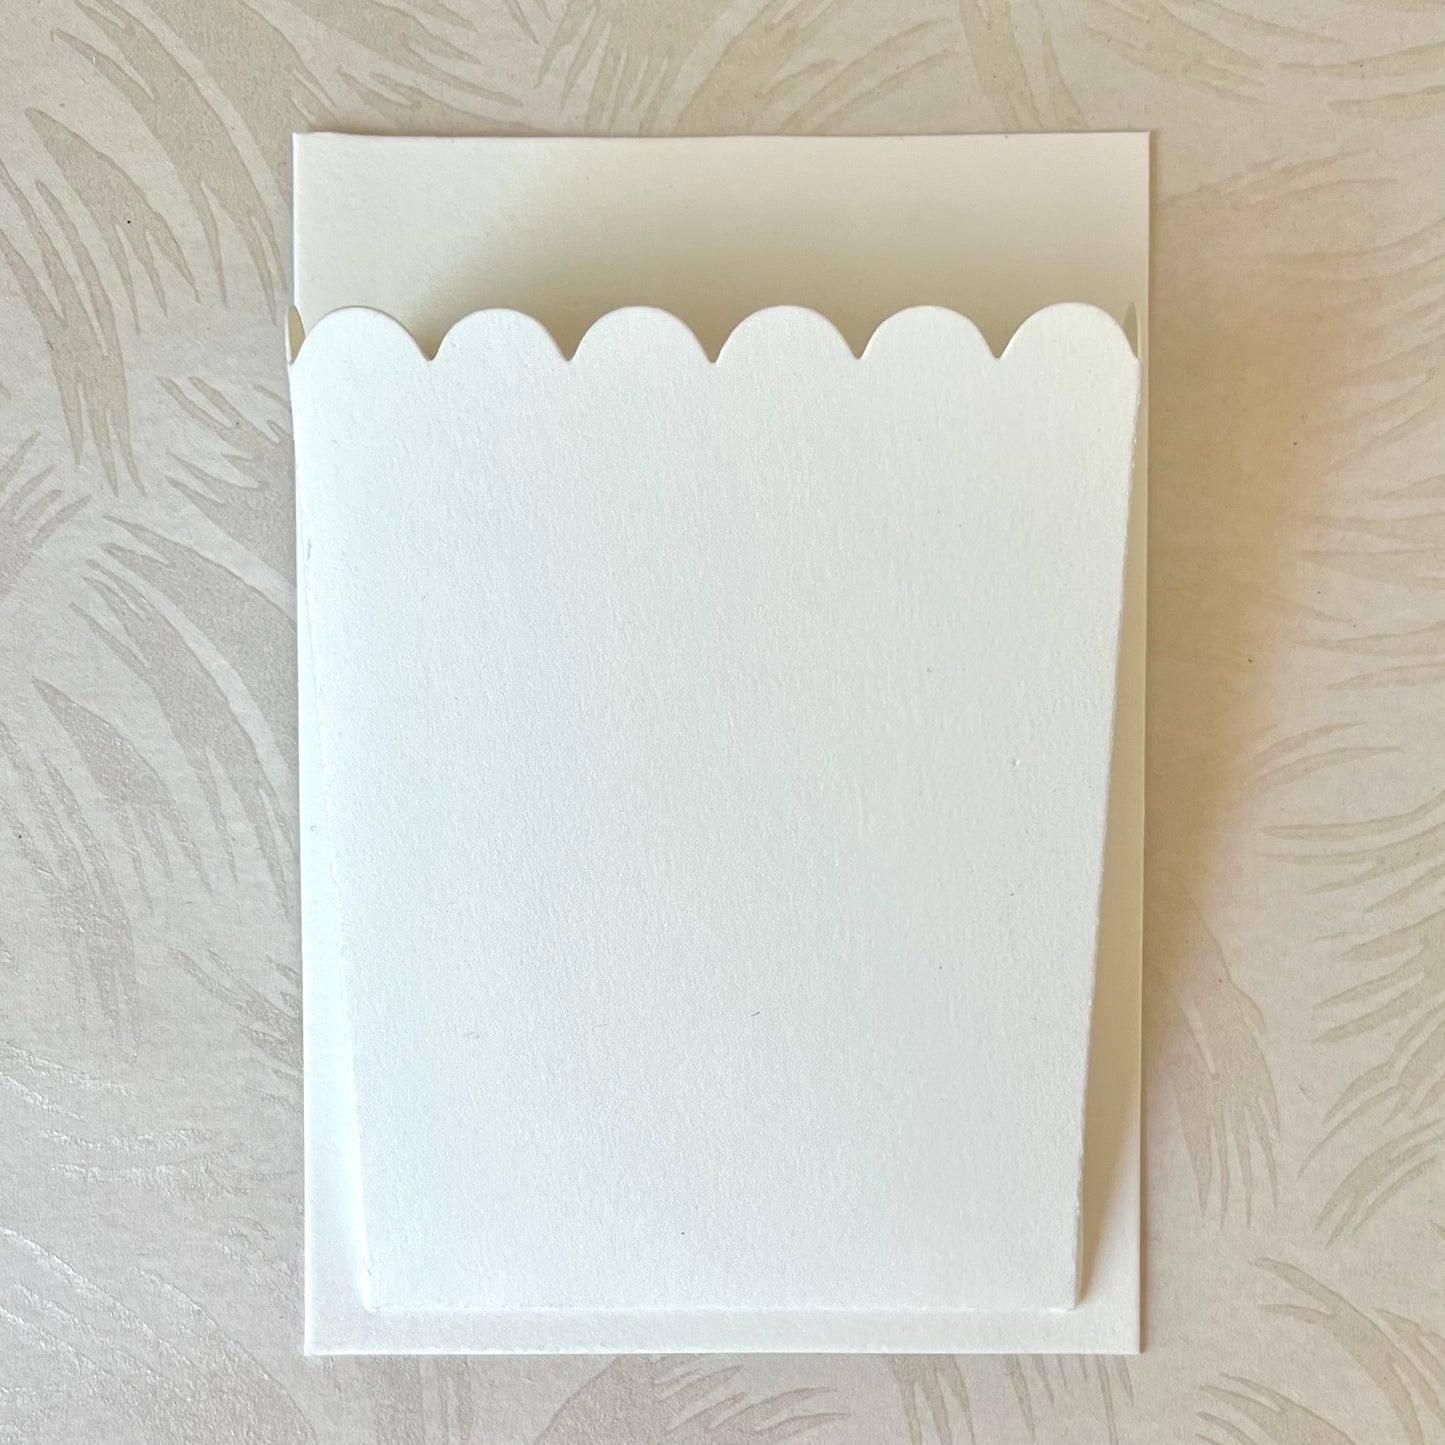 Die-Cut Letterpress Paper Wall Pocket